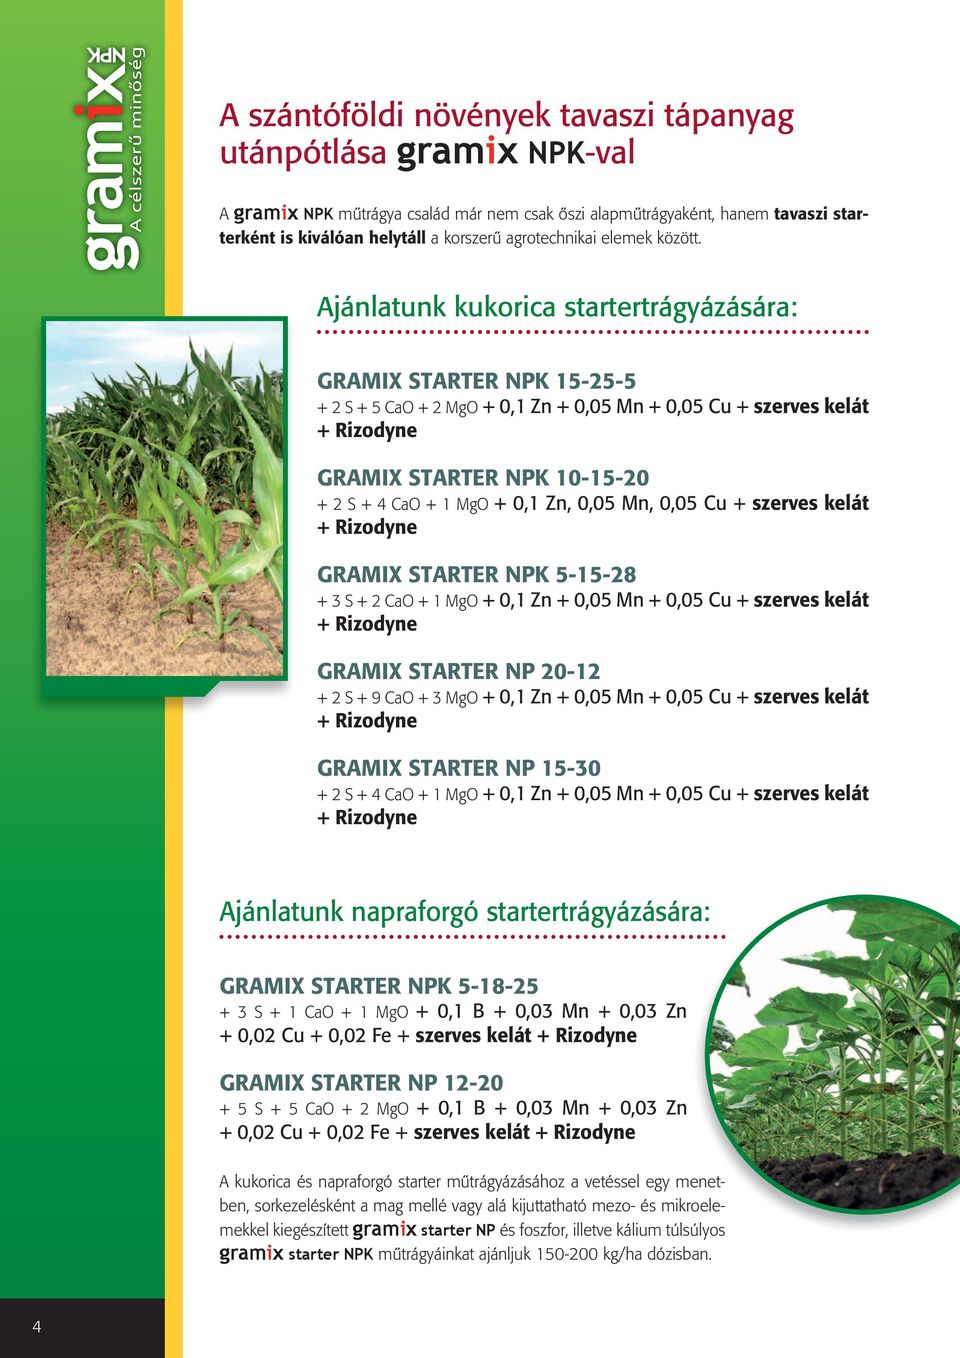 Ajánlatunk kukorica startertrágyázására: GRAMIX STARTER NPK 15-25-5 + 2 S + 5 CaO + 2 MgO + 0,1 Zn + 0,05 Mn + 0,05 Cu + szerves kelát GRAMIX STARTER NPK 10-15-20 + 2 S + 4 CaO + 1 MgO + 0,1 Zn, 0,05